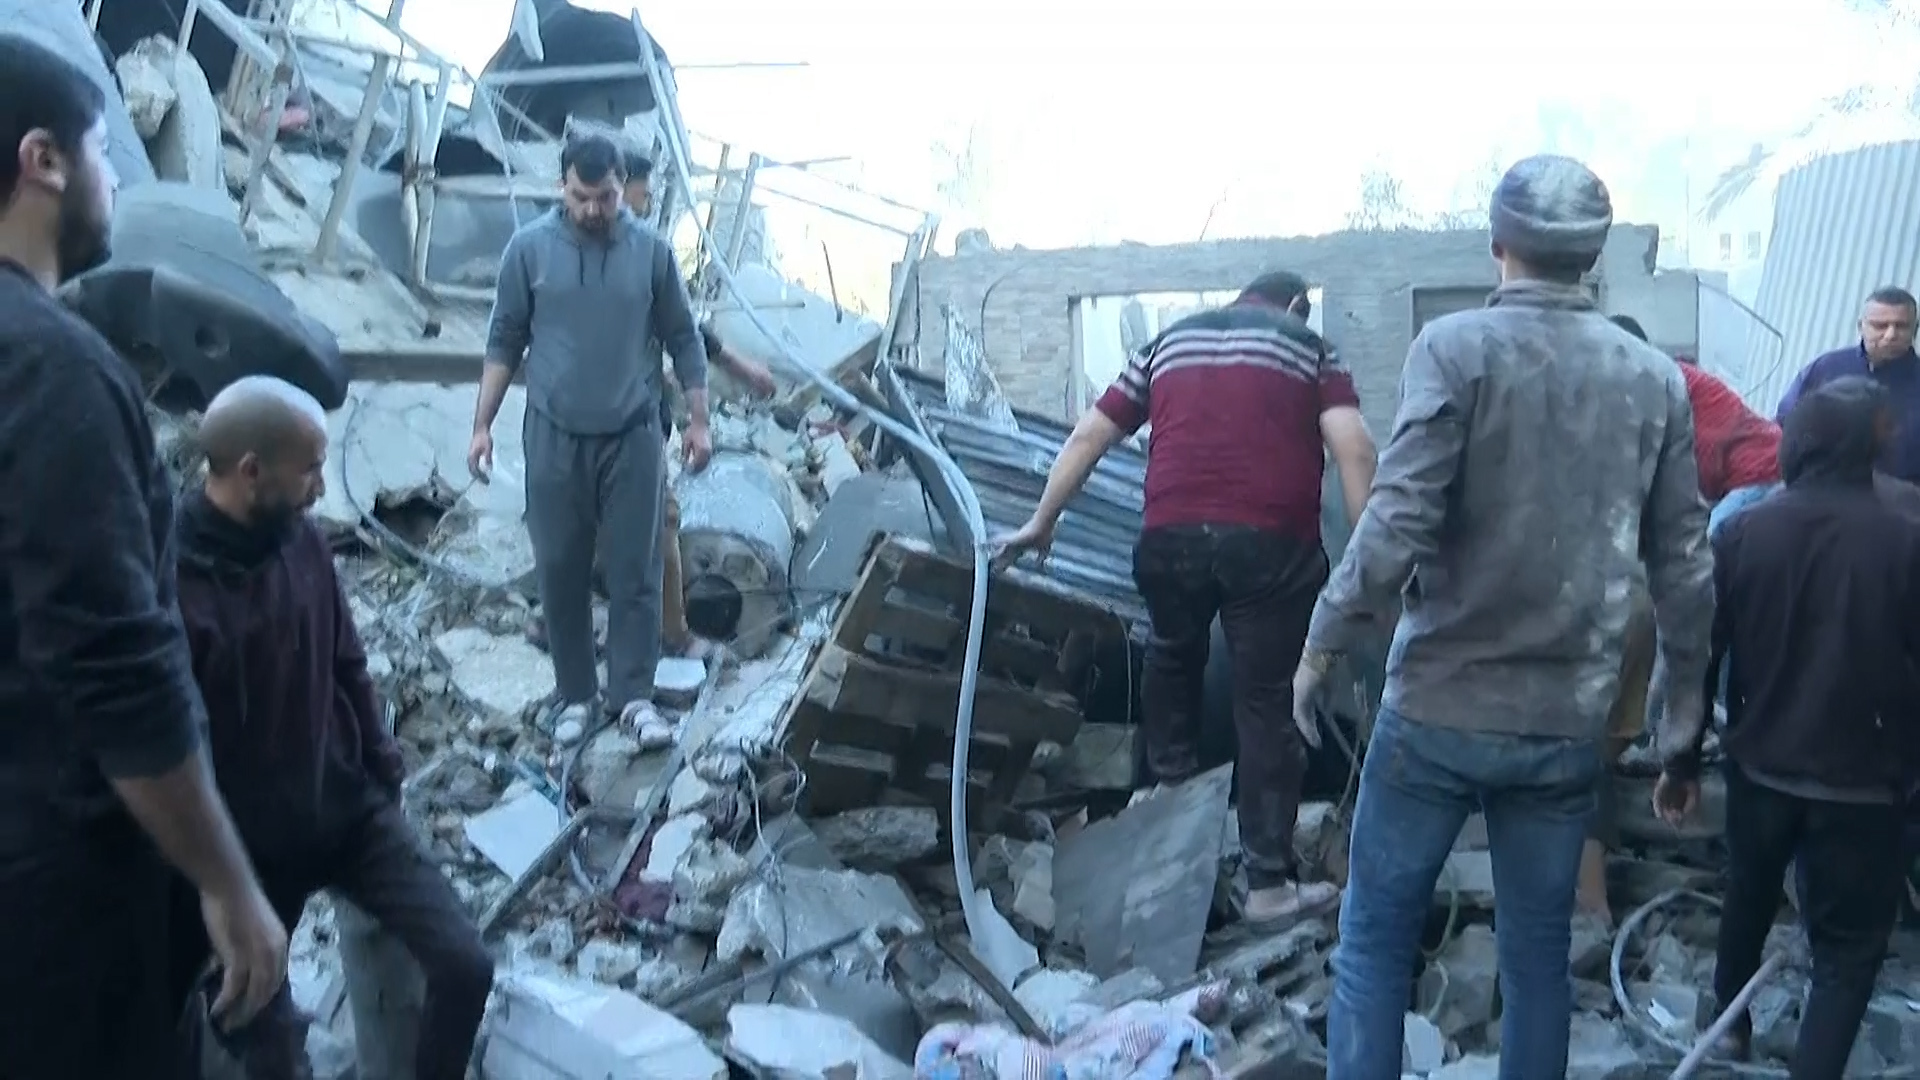 شهداء وجرحى في قصف إسرائيلي استهدف منزلا بدير البلح | البرامج – البوكس نيوز